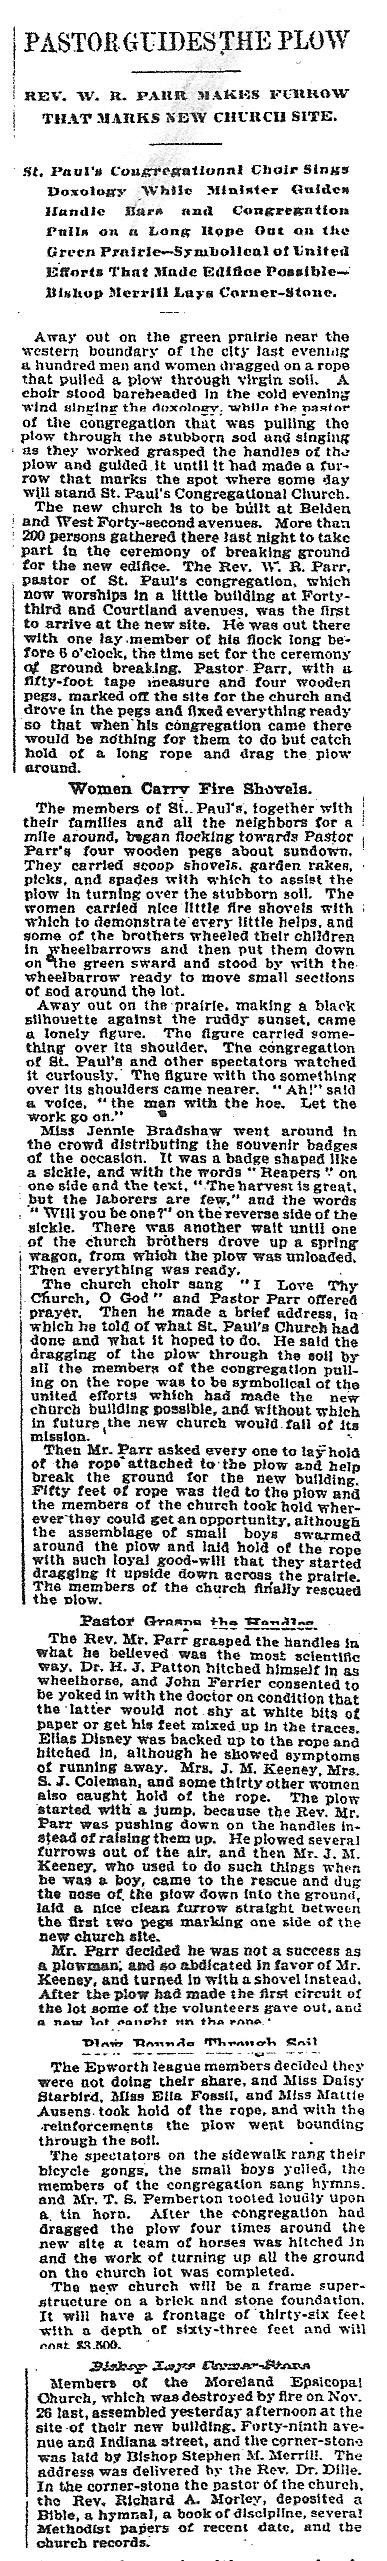 May 20, 1900, article